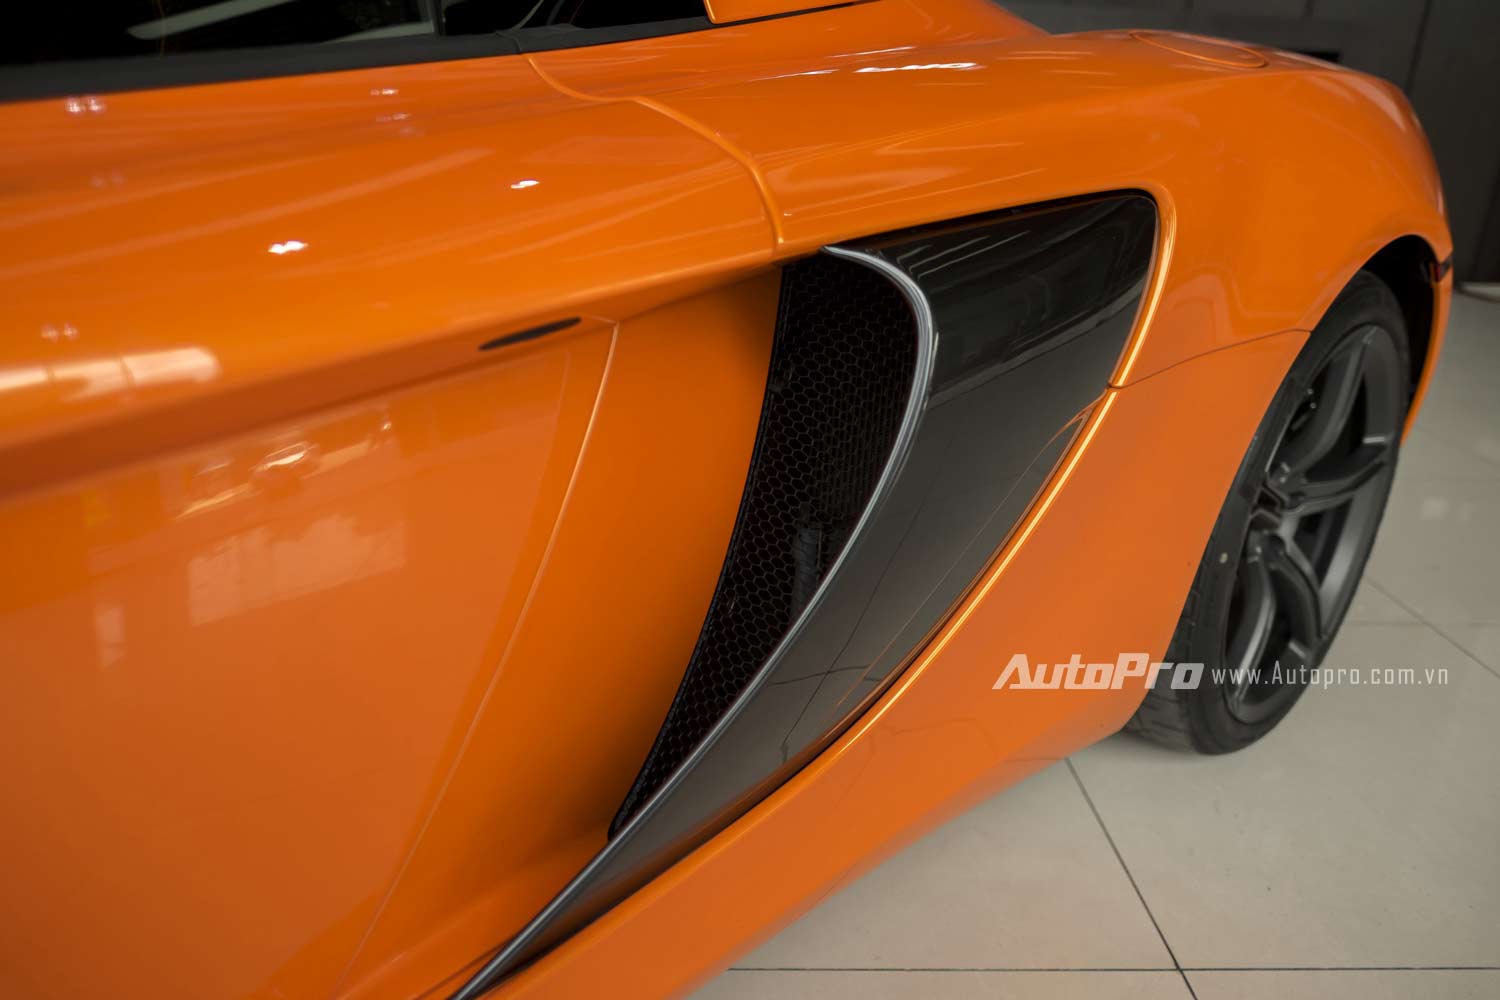 20160619095844 xe 5 Hình ảnh cận cảnh đến từng chi tiết siêu xe McLaren 650S Spider